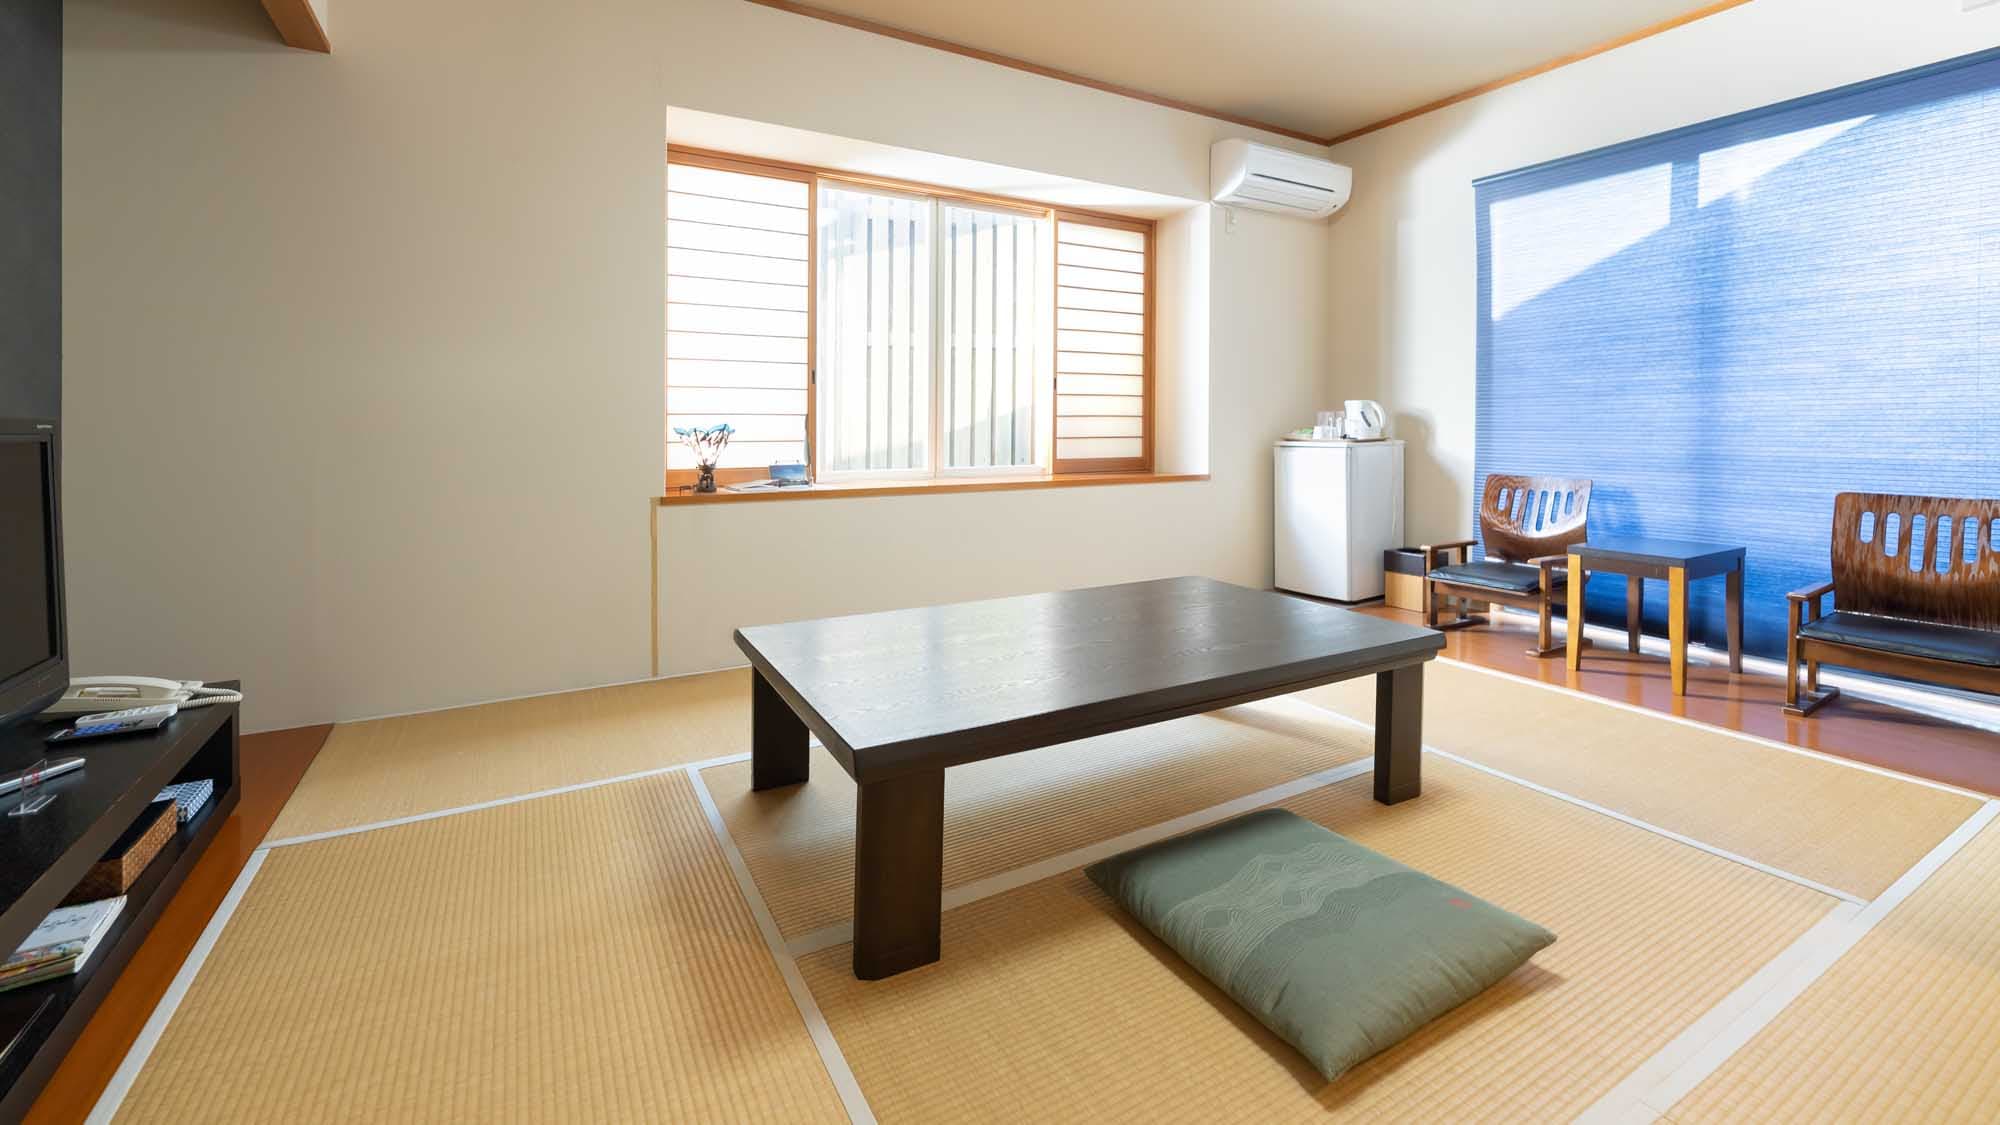 Ao-Ao [禁烟]日式房间8张榻榻米2房间/客厅